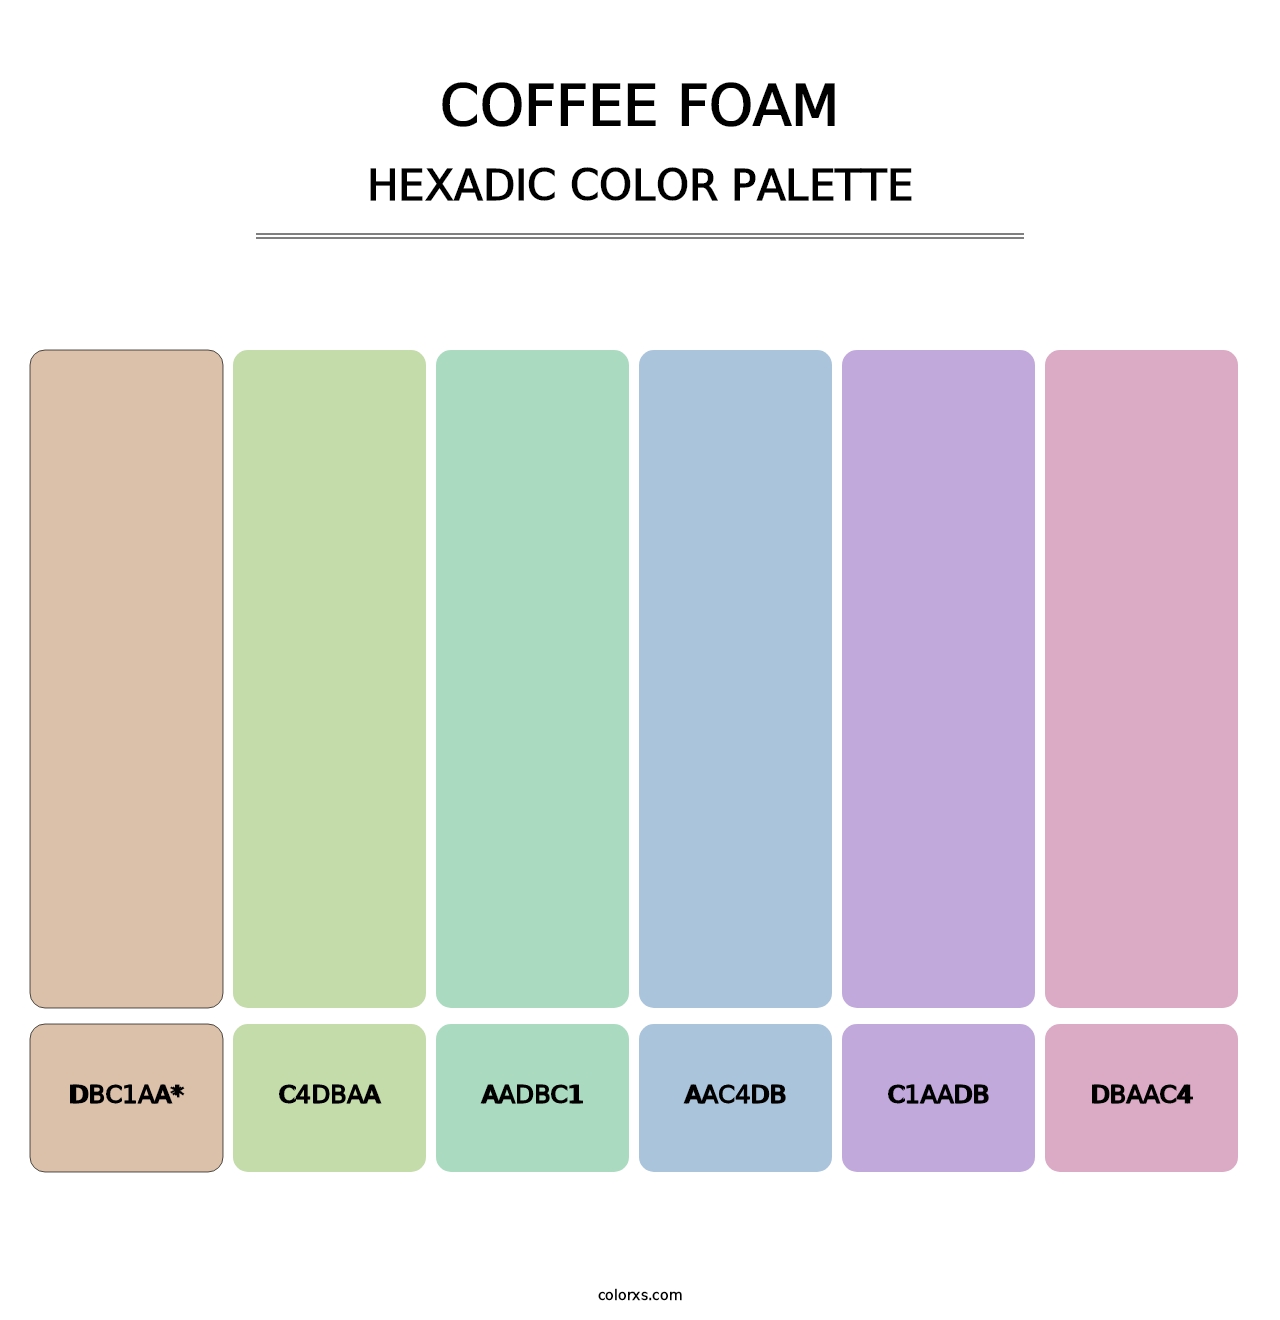 Coffee Foam - Hexadic Color Palette